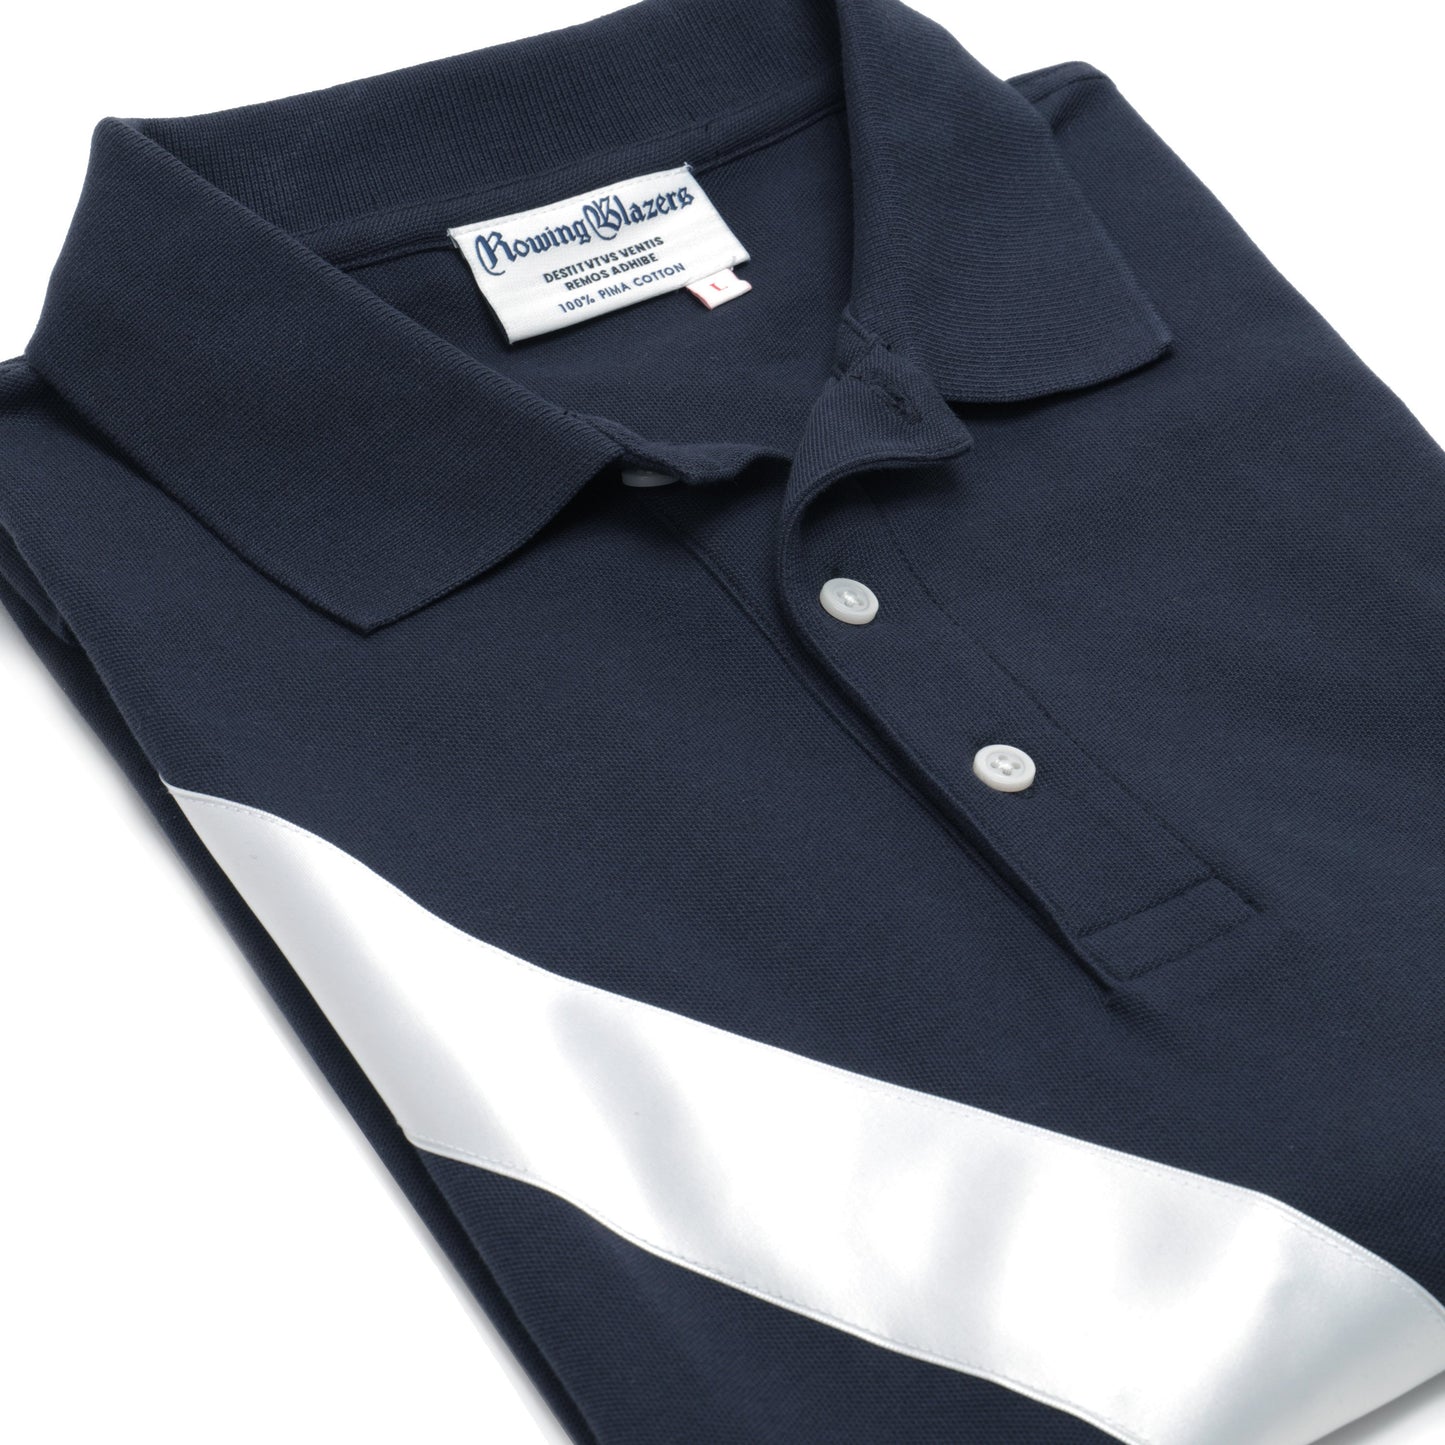 100% Pima Cotton Stripe Polo (Authentic Polo Shirt with Satin Stripe - Navy)